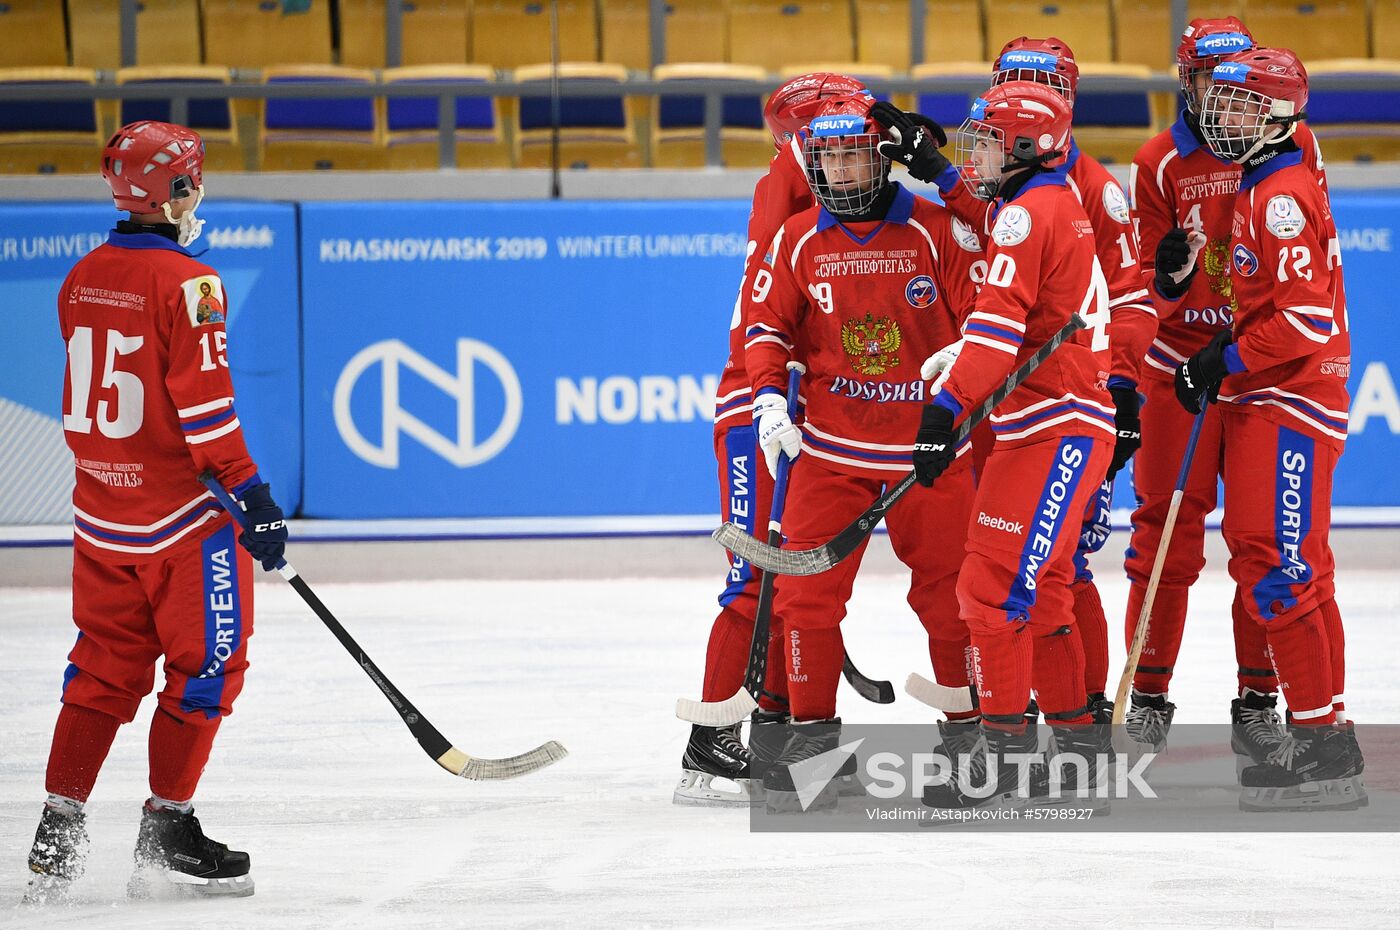 Russia Universiade Bandy Men Russia - Kazakhstan